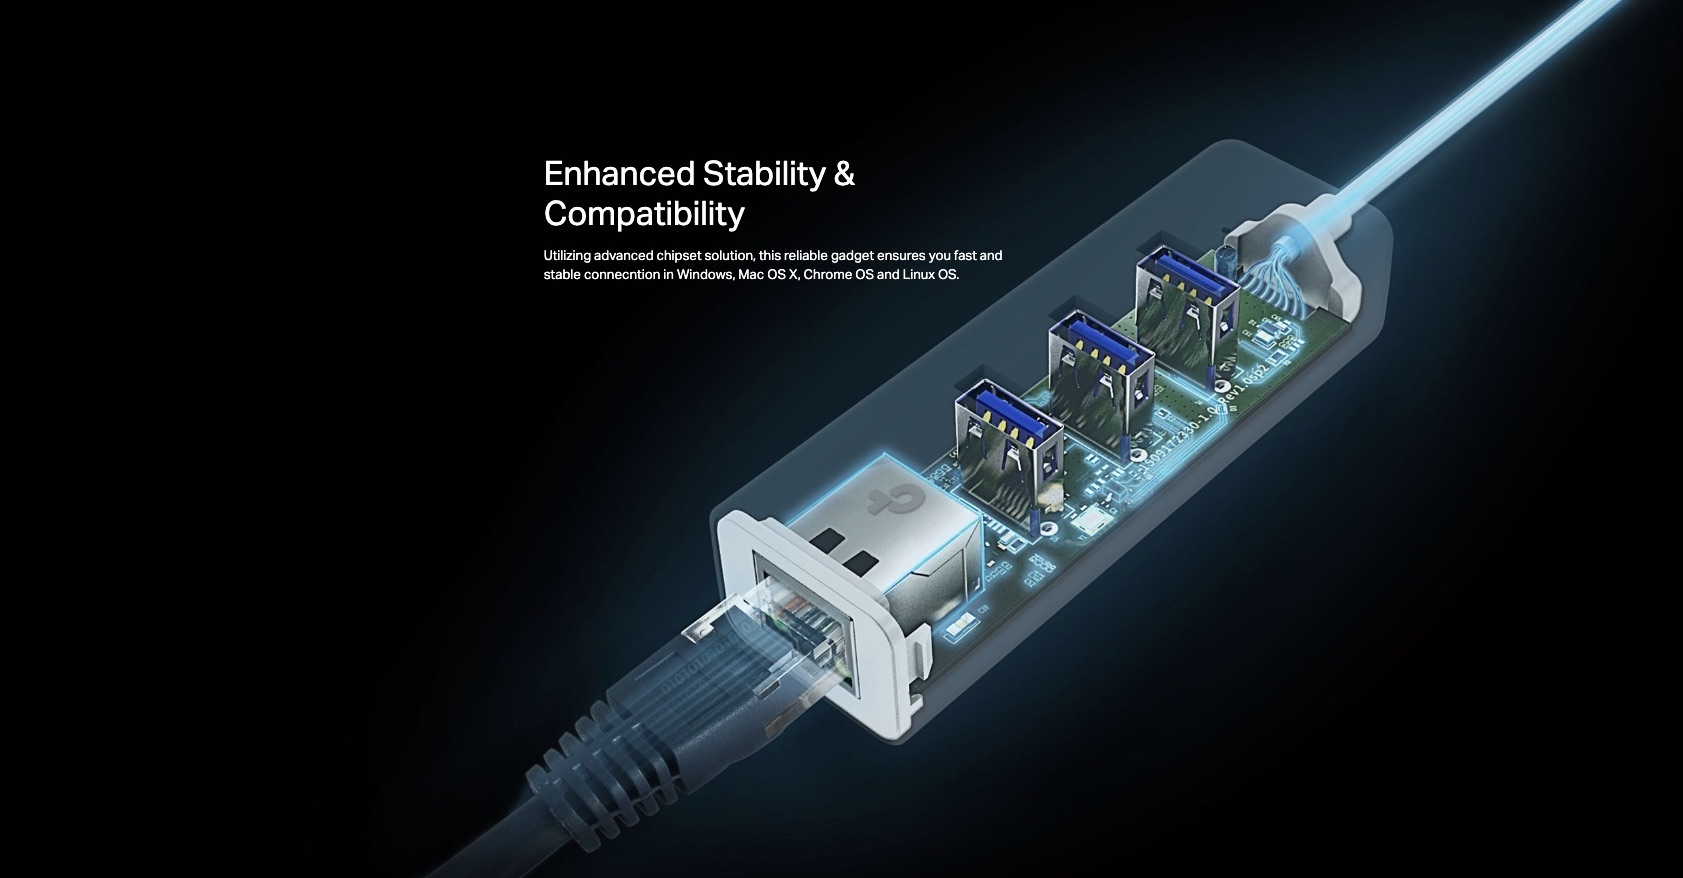 TP-Link-UE330-USB-3.0-3-Port-Hub-And-Gigabit-Ethernet-Adapter-2-in-1-USB-Adapter-Description-6